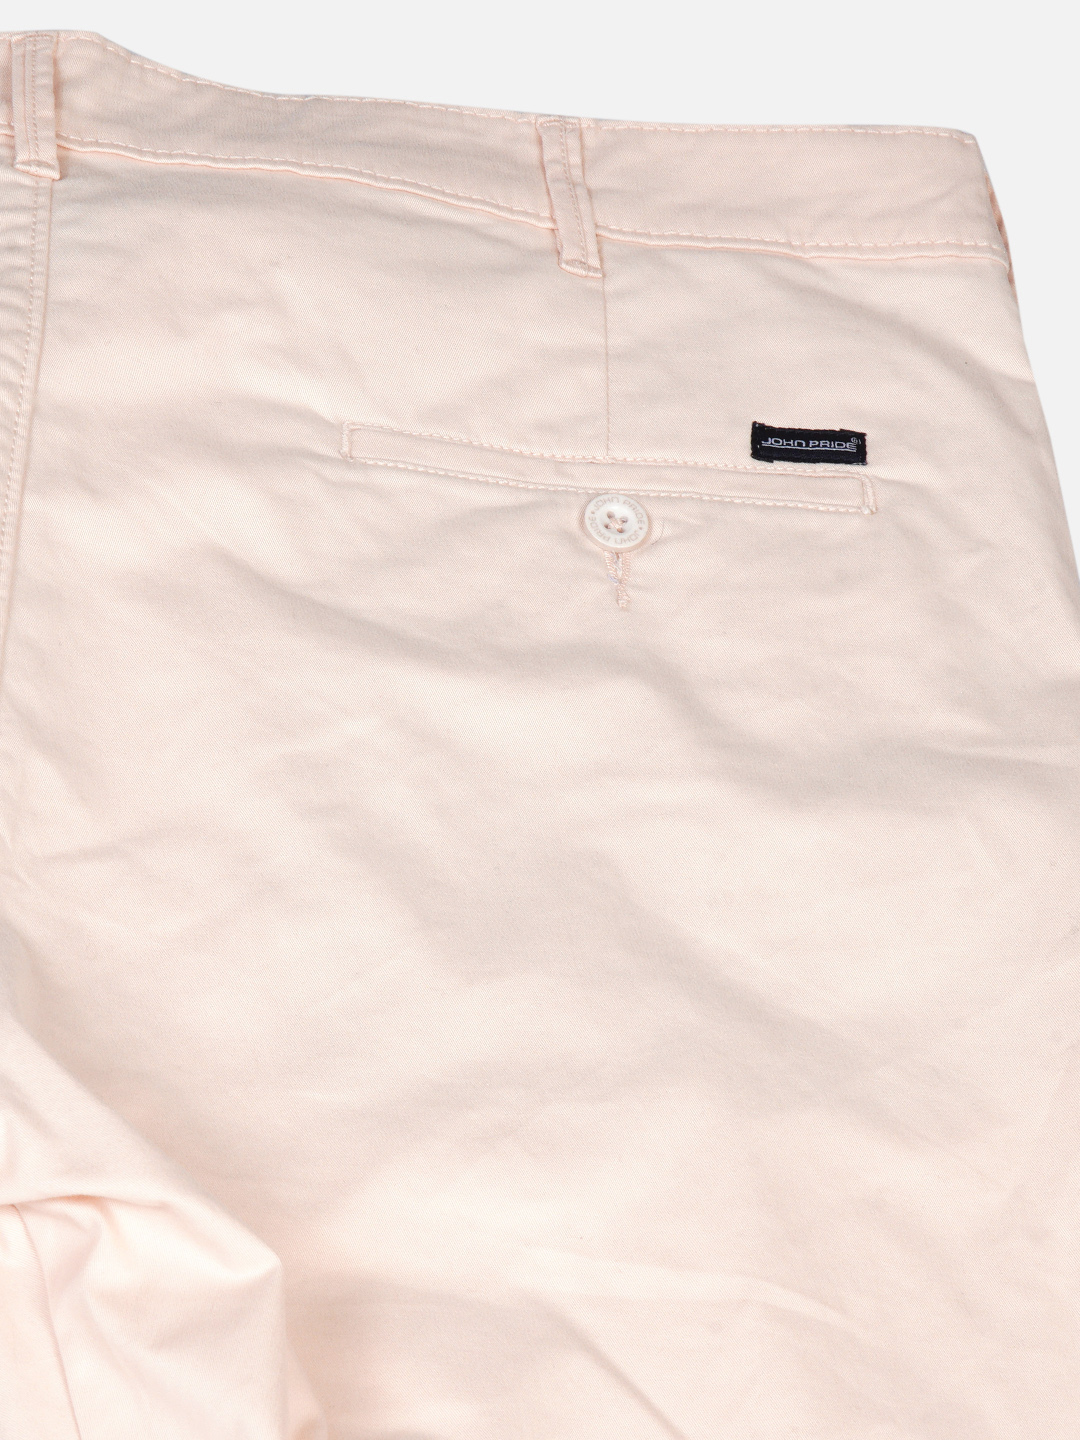 bottomwear/trousers/JPTR2195N/jptr2195n-6.jpg